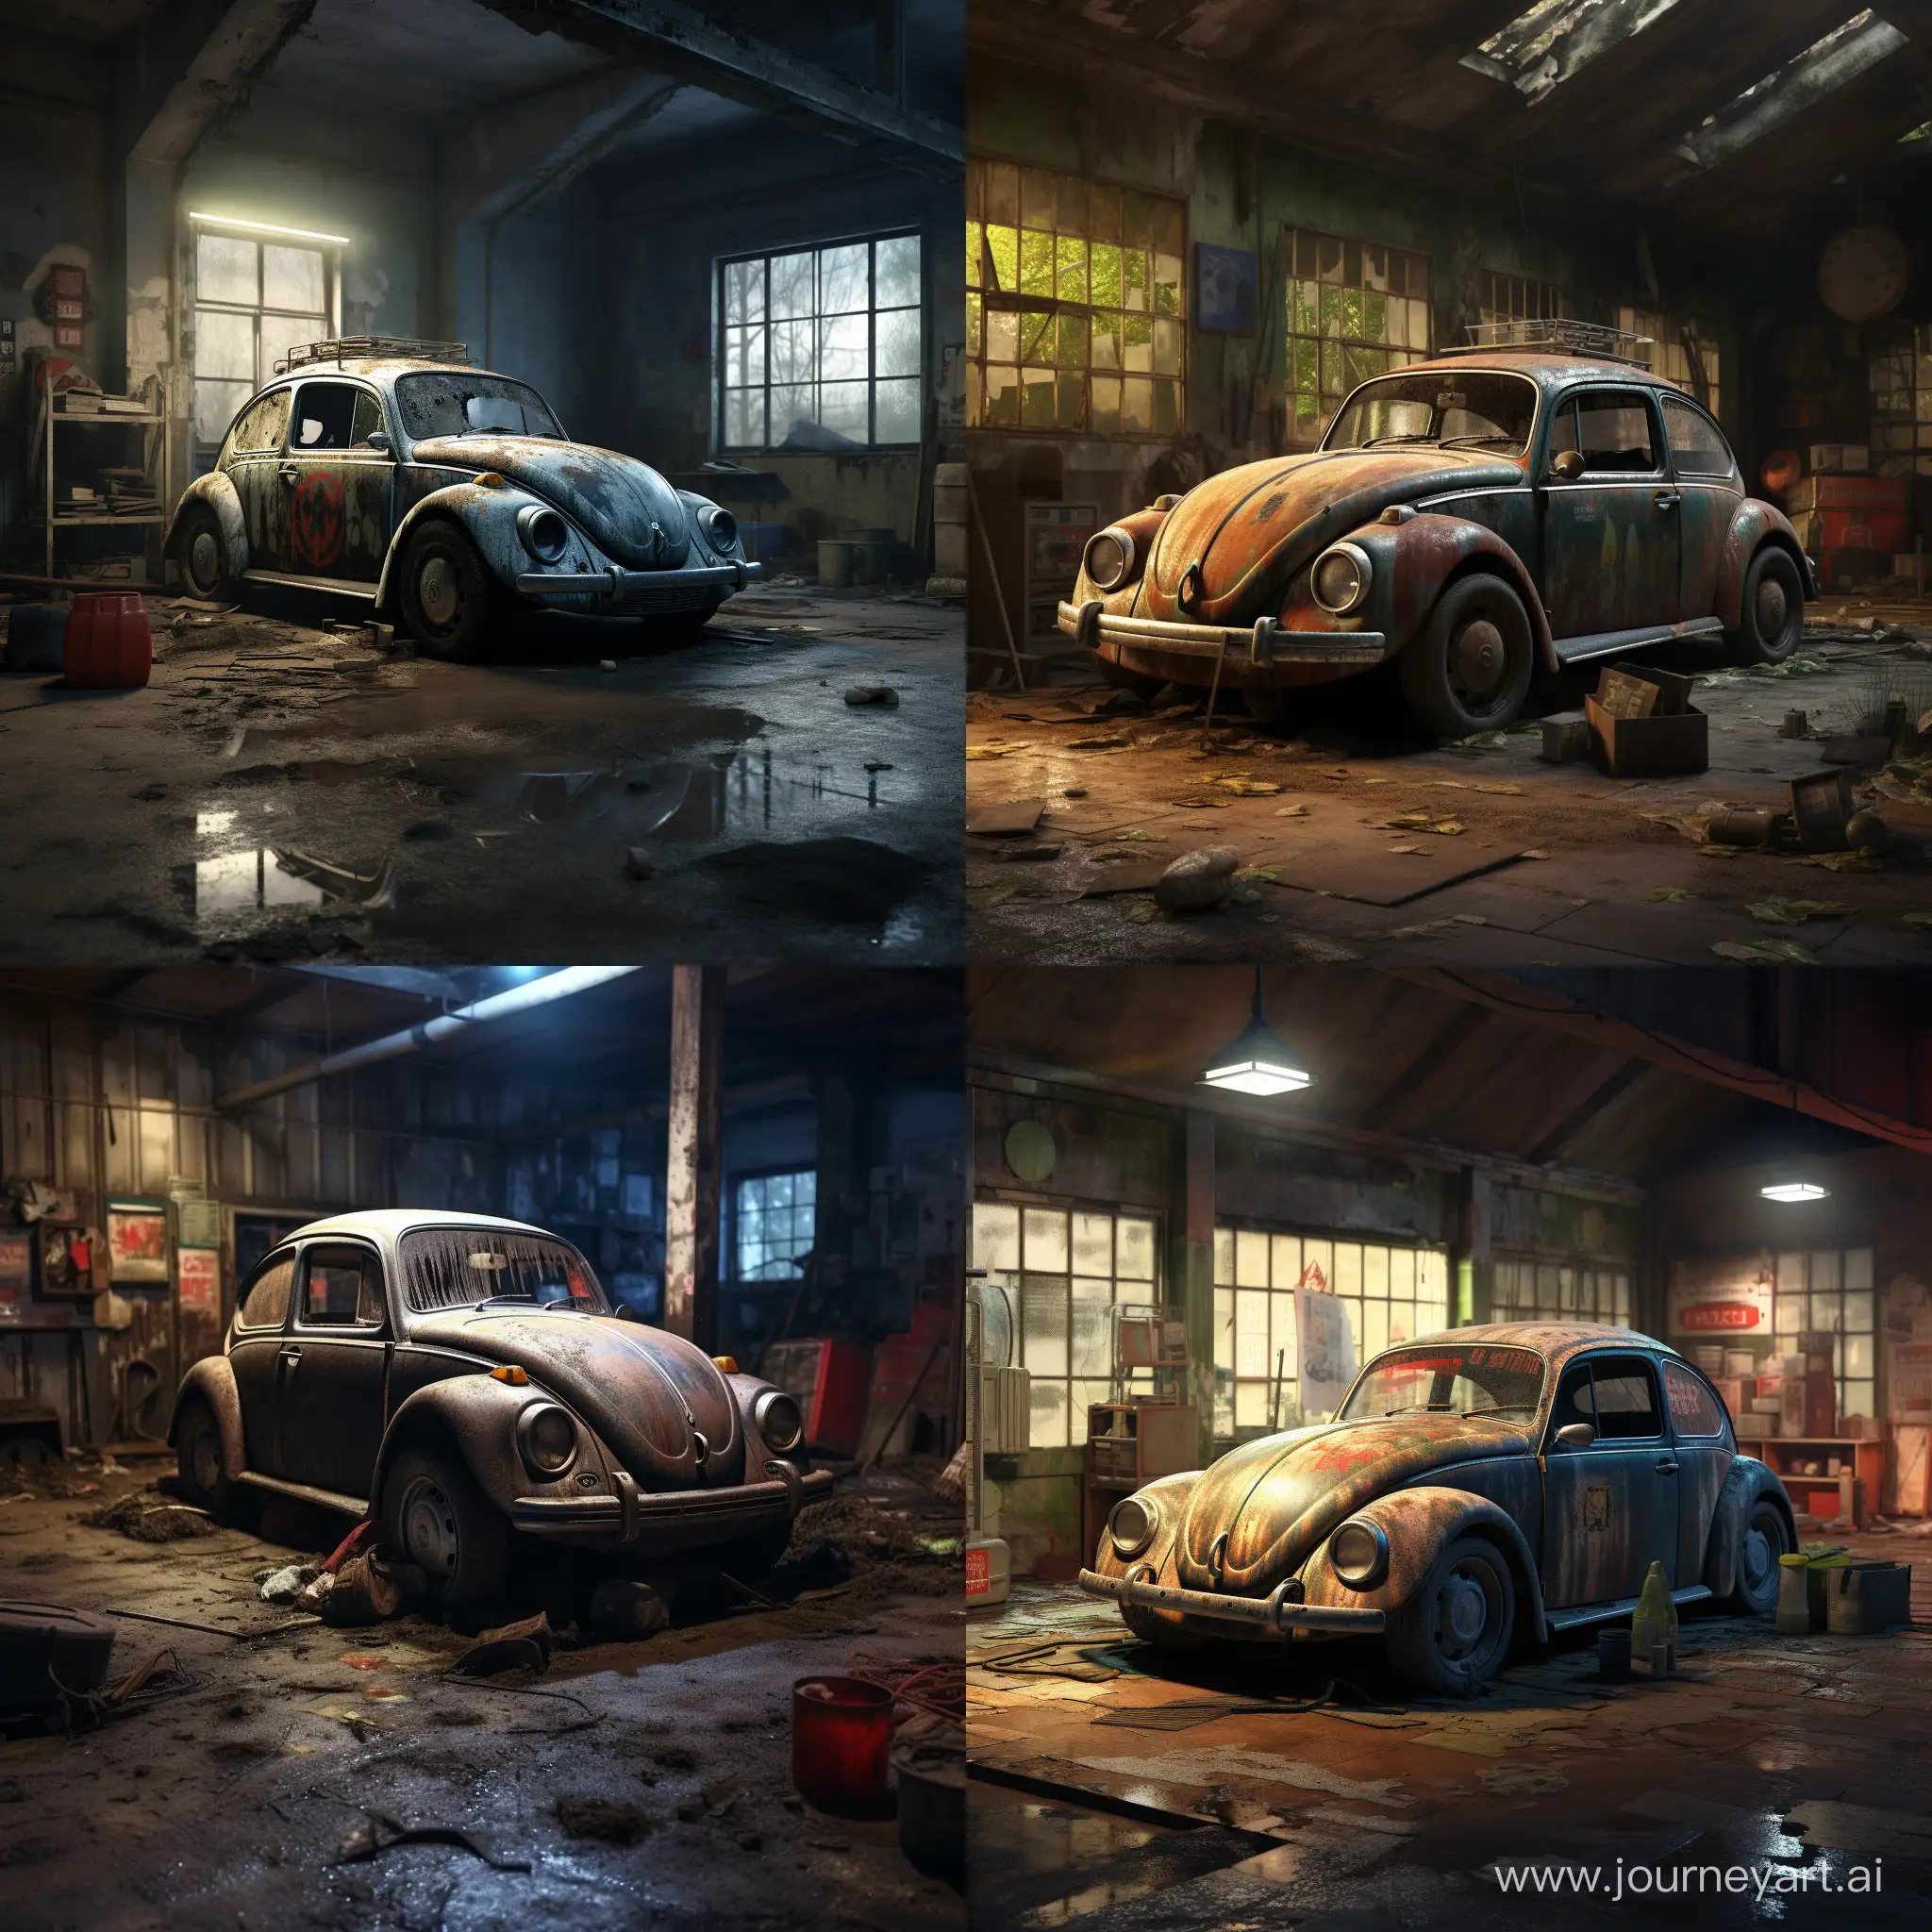 Vintage-Volkswagen-Beetle-in-Rustic-Garage-Setting